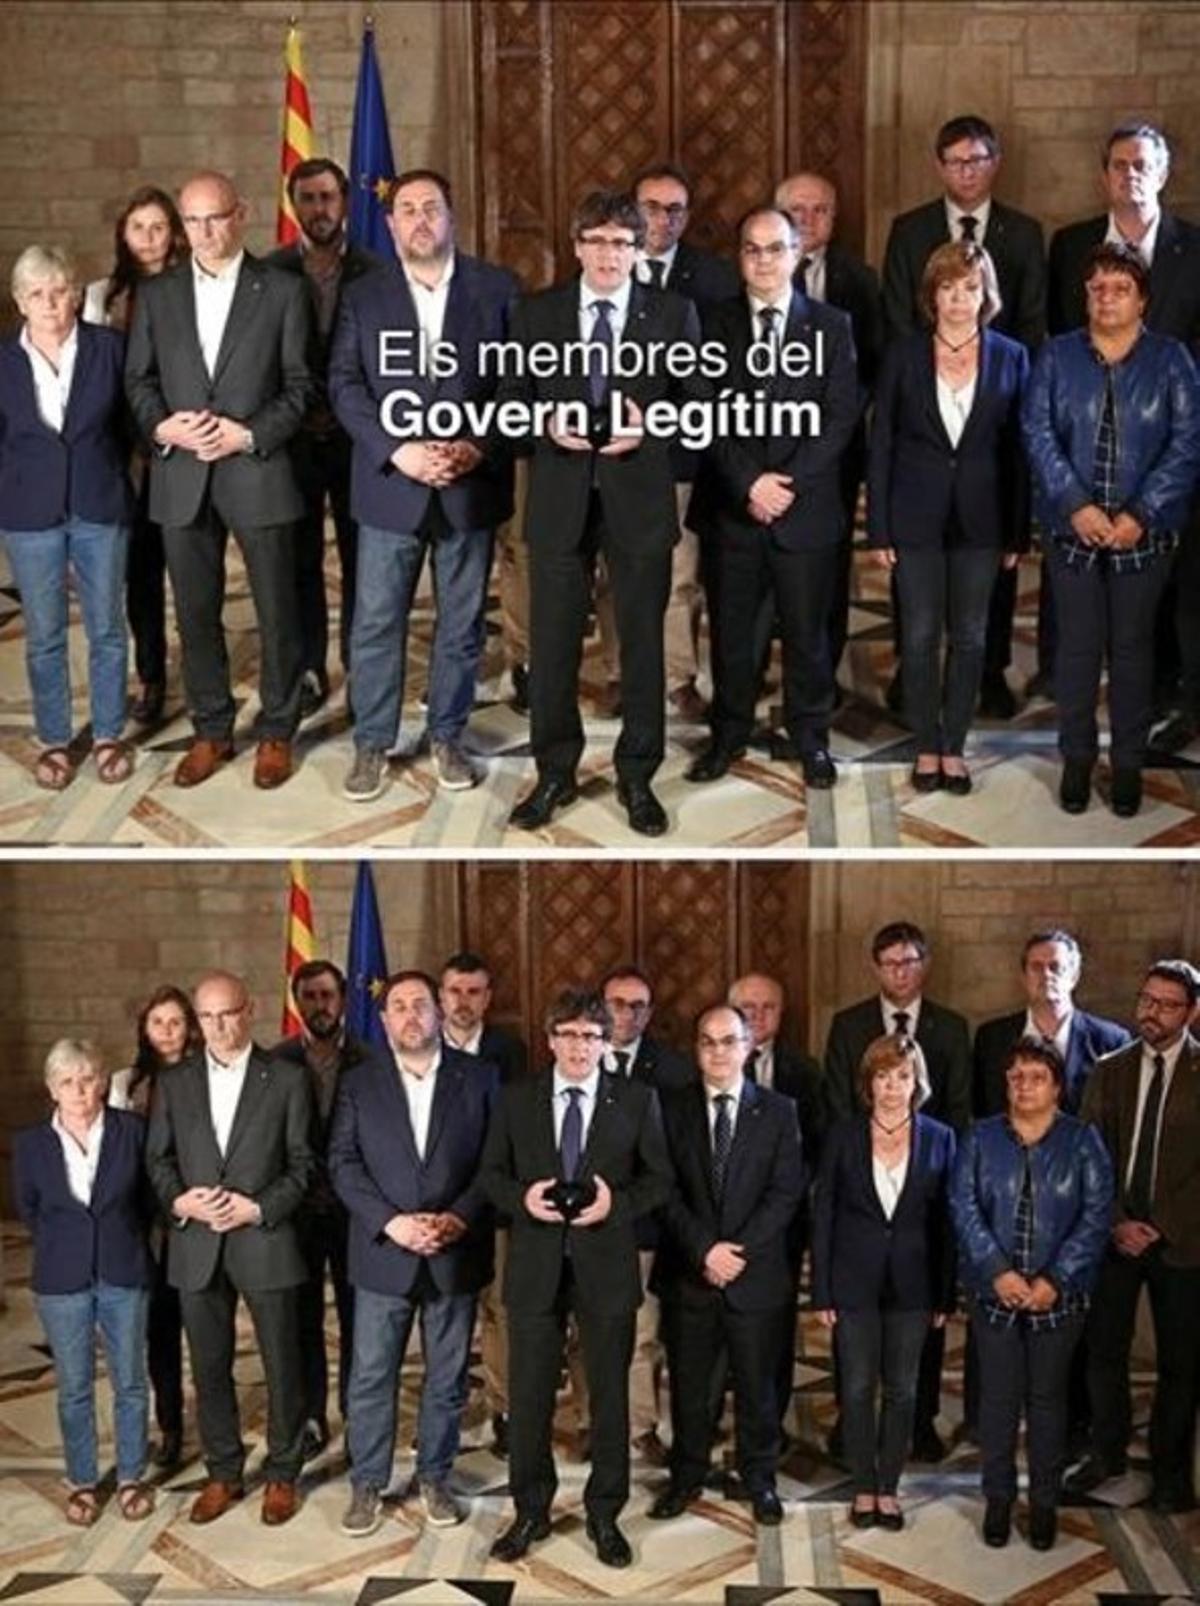 La foto del Govern legítim de Puigdemont antes y después de borrar a Santi Vila.